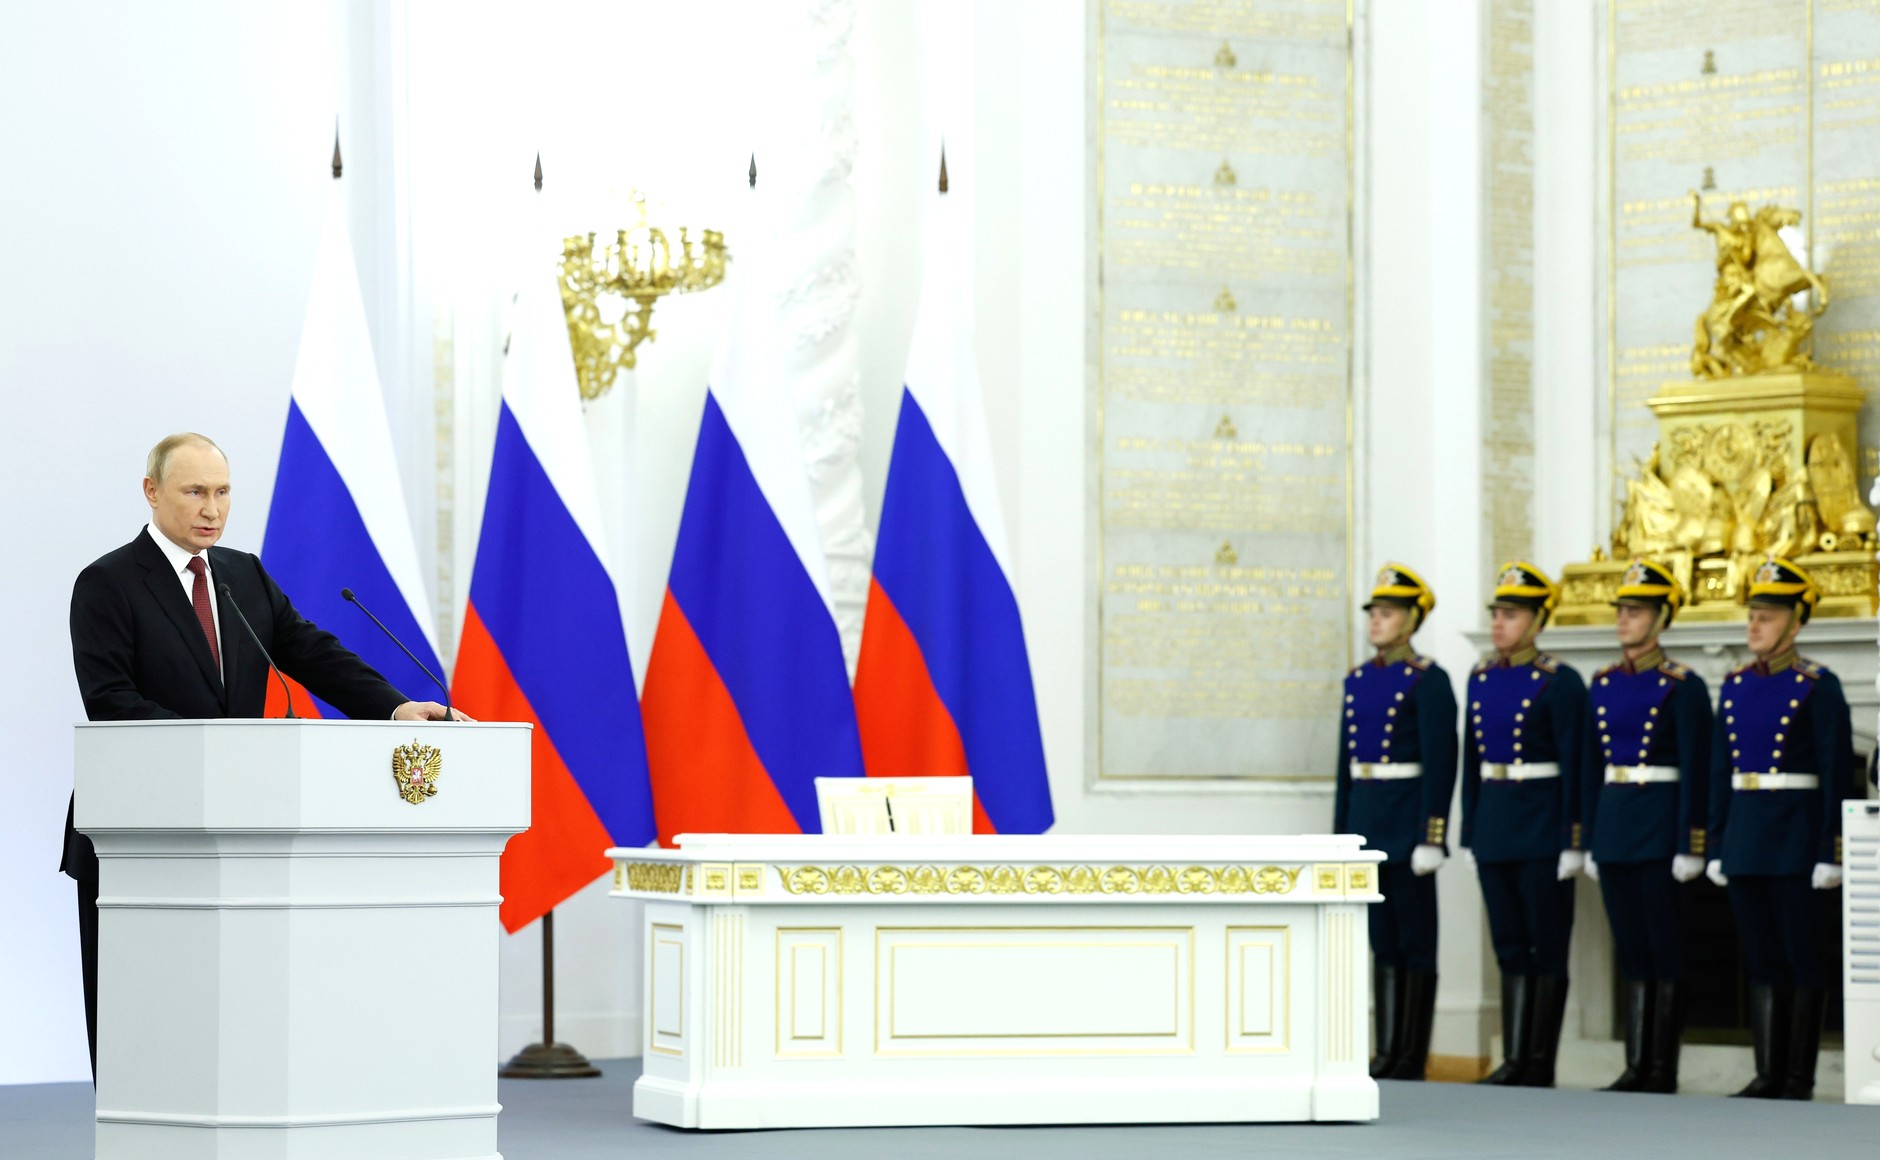 Члены Президиума МСР присутствовали на церемонии подписания договоров и образования новых субъектов Российской Федерации.